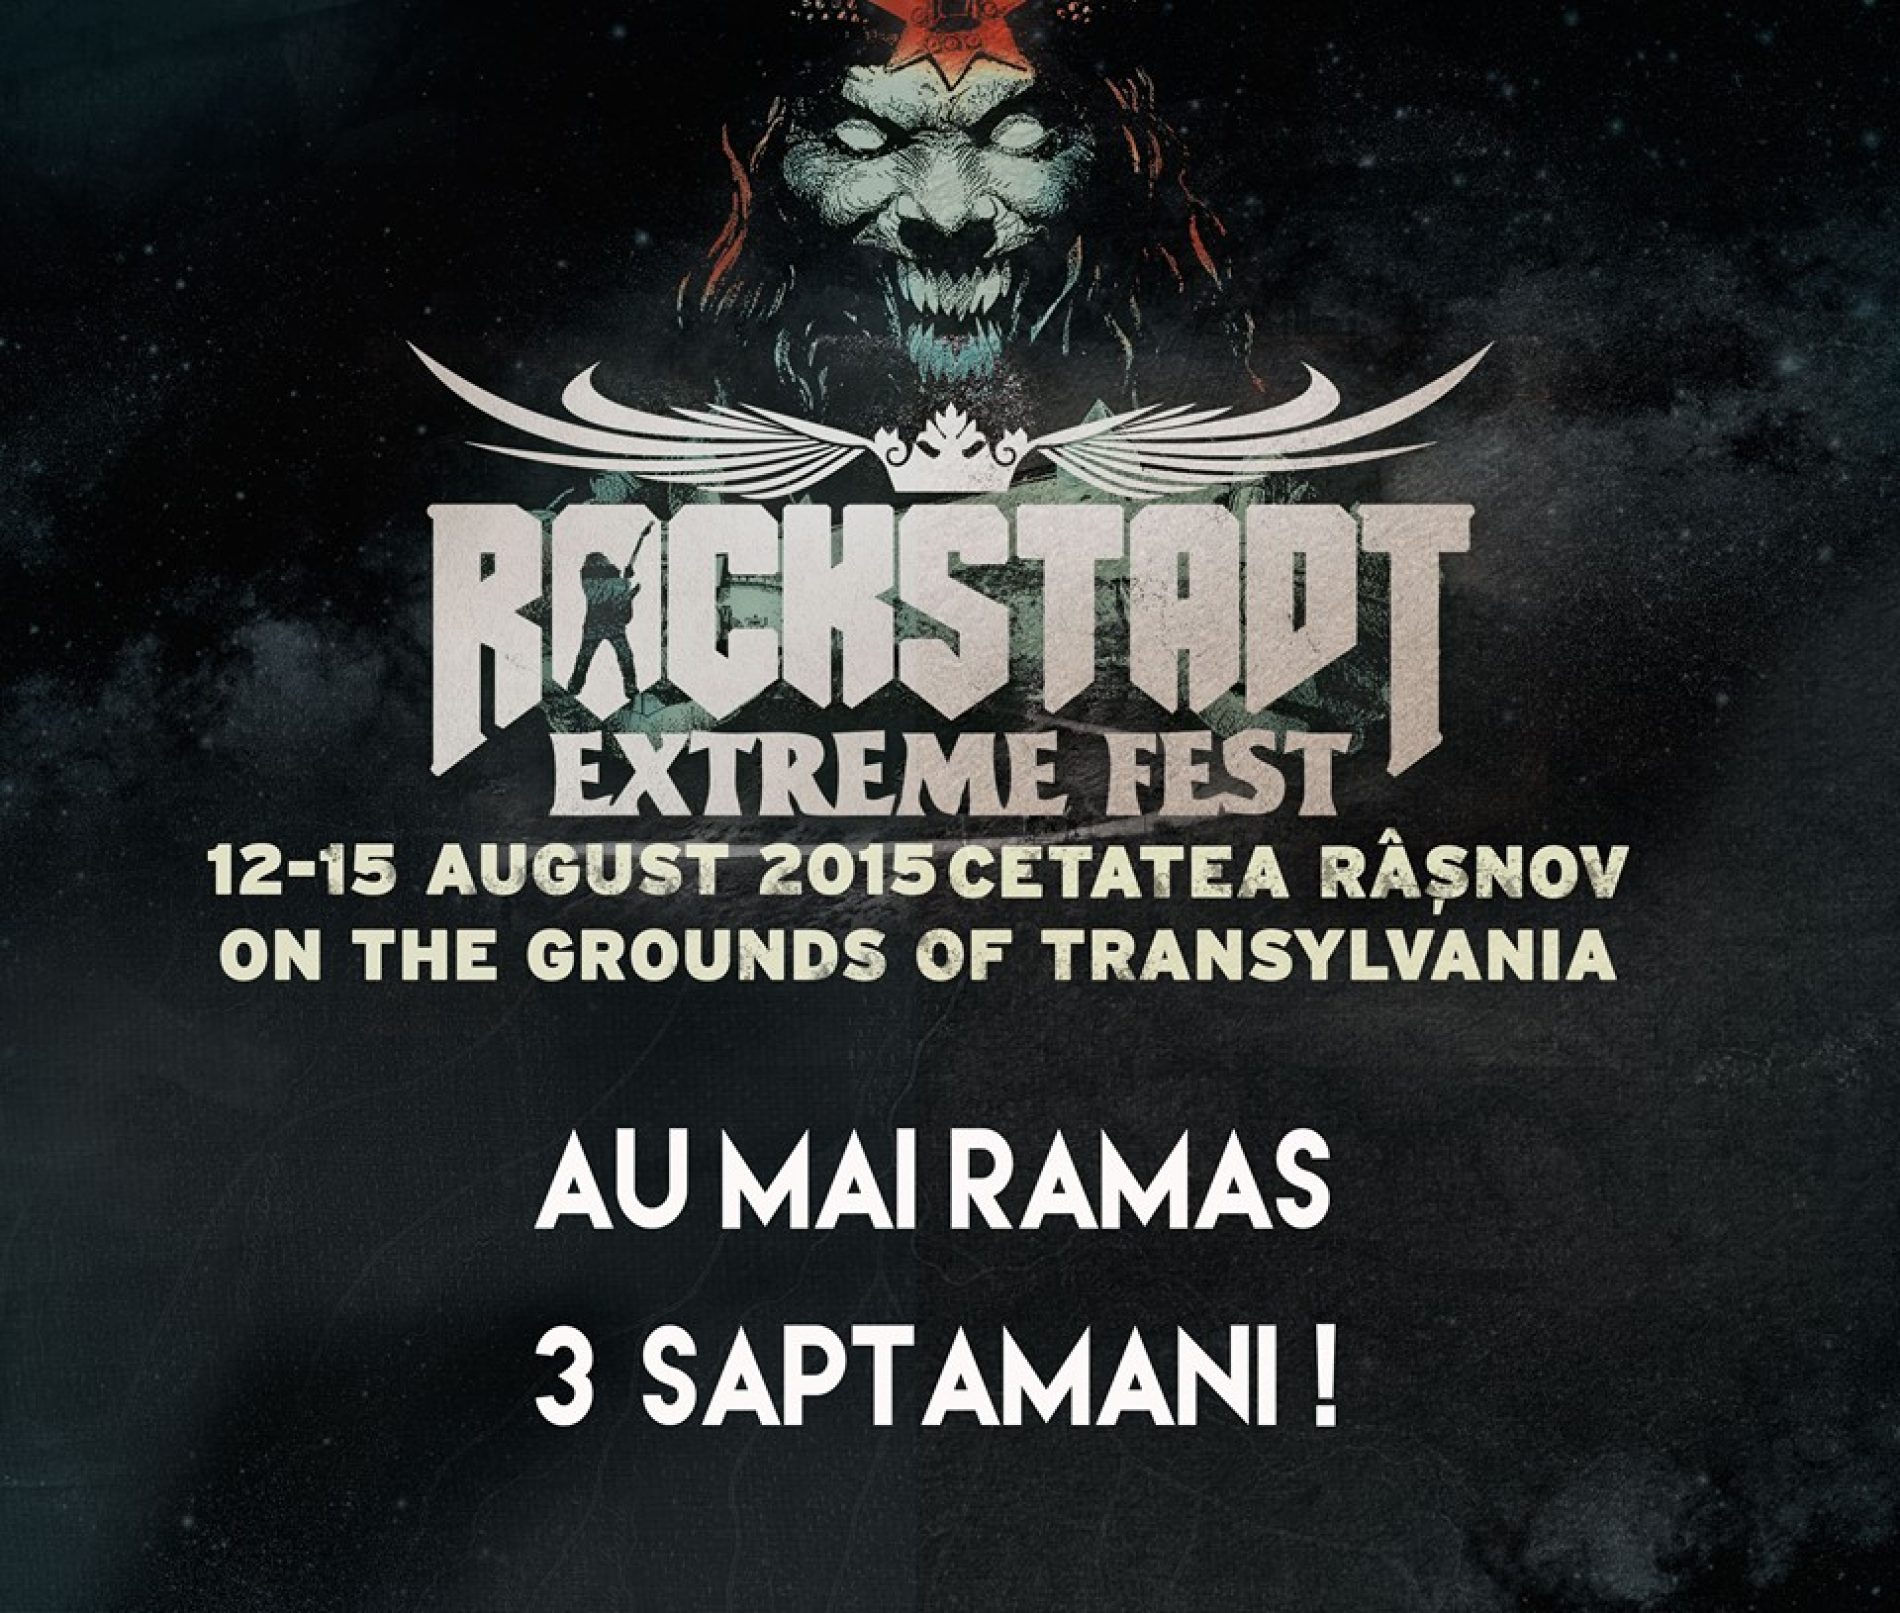 Detalii complete despre Rockstadt Extreme Fest 2015